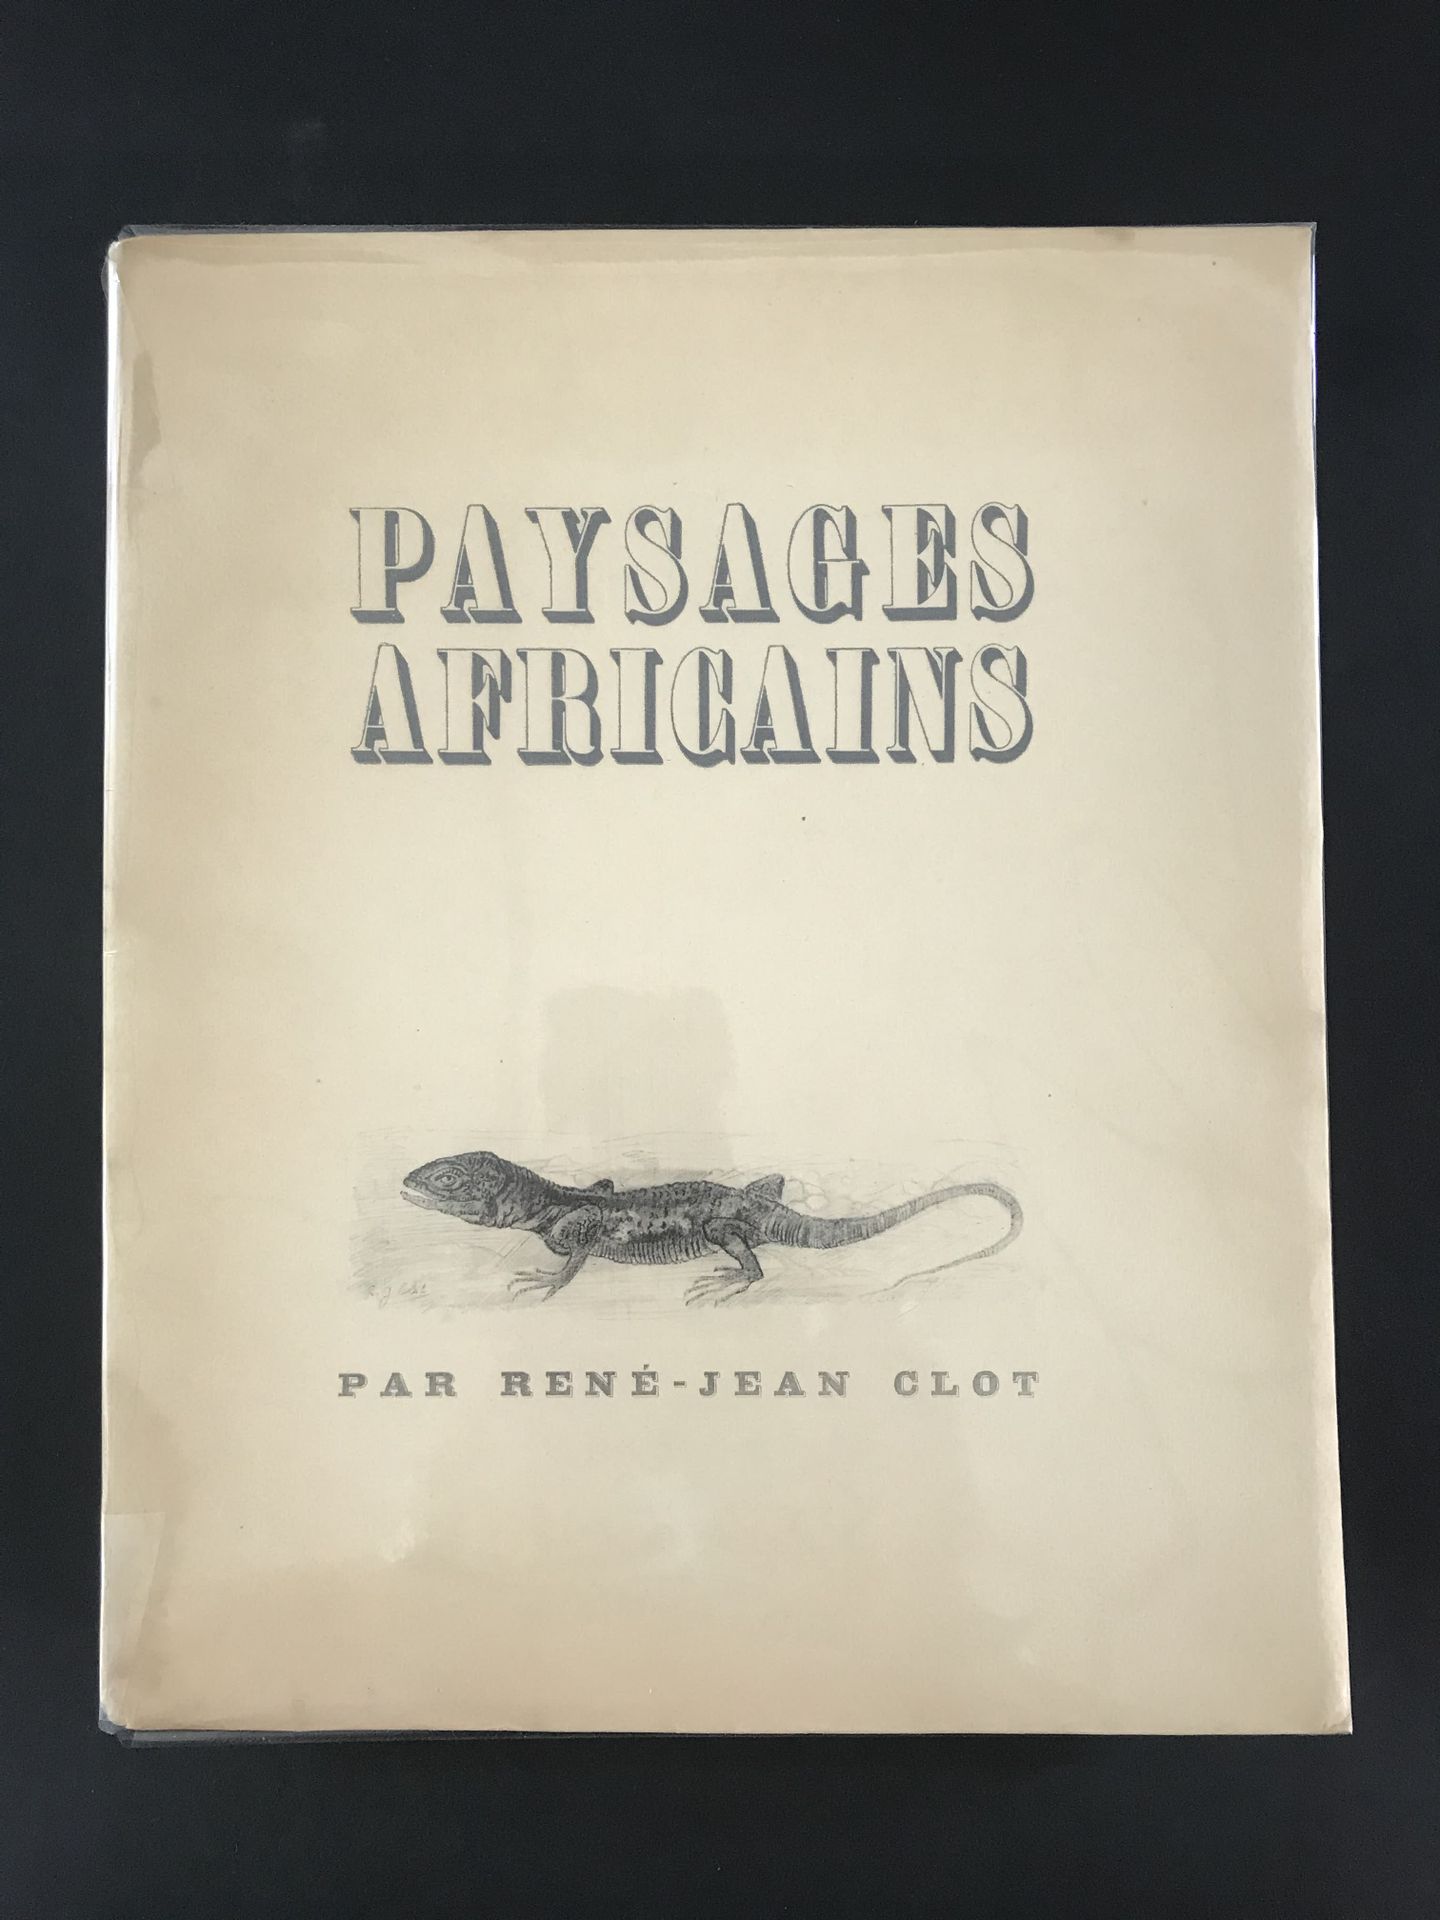 Null Paisajes africanos 

Por René-Jean Clot

1945

Ejemplar nº 30 sobre pergami&hellip;